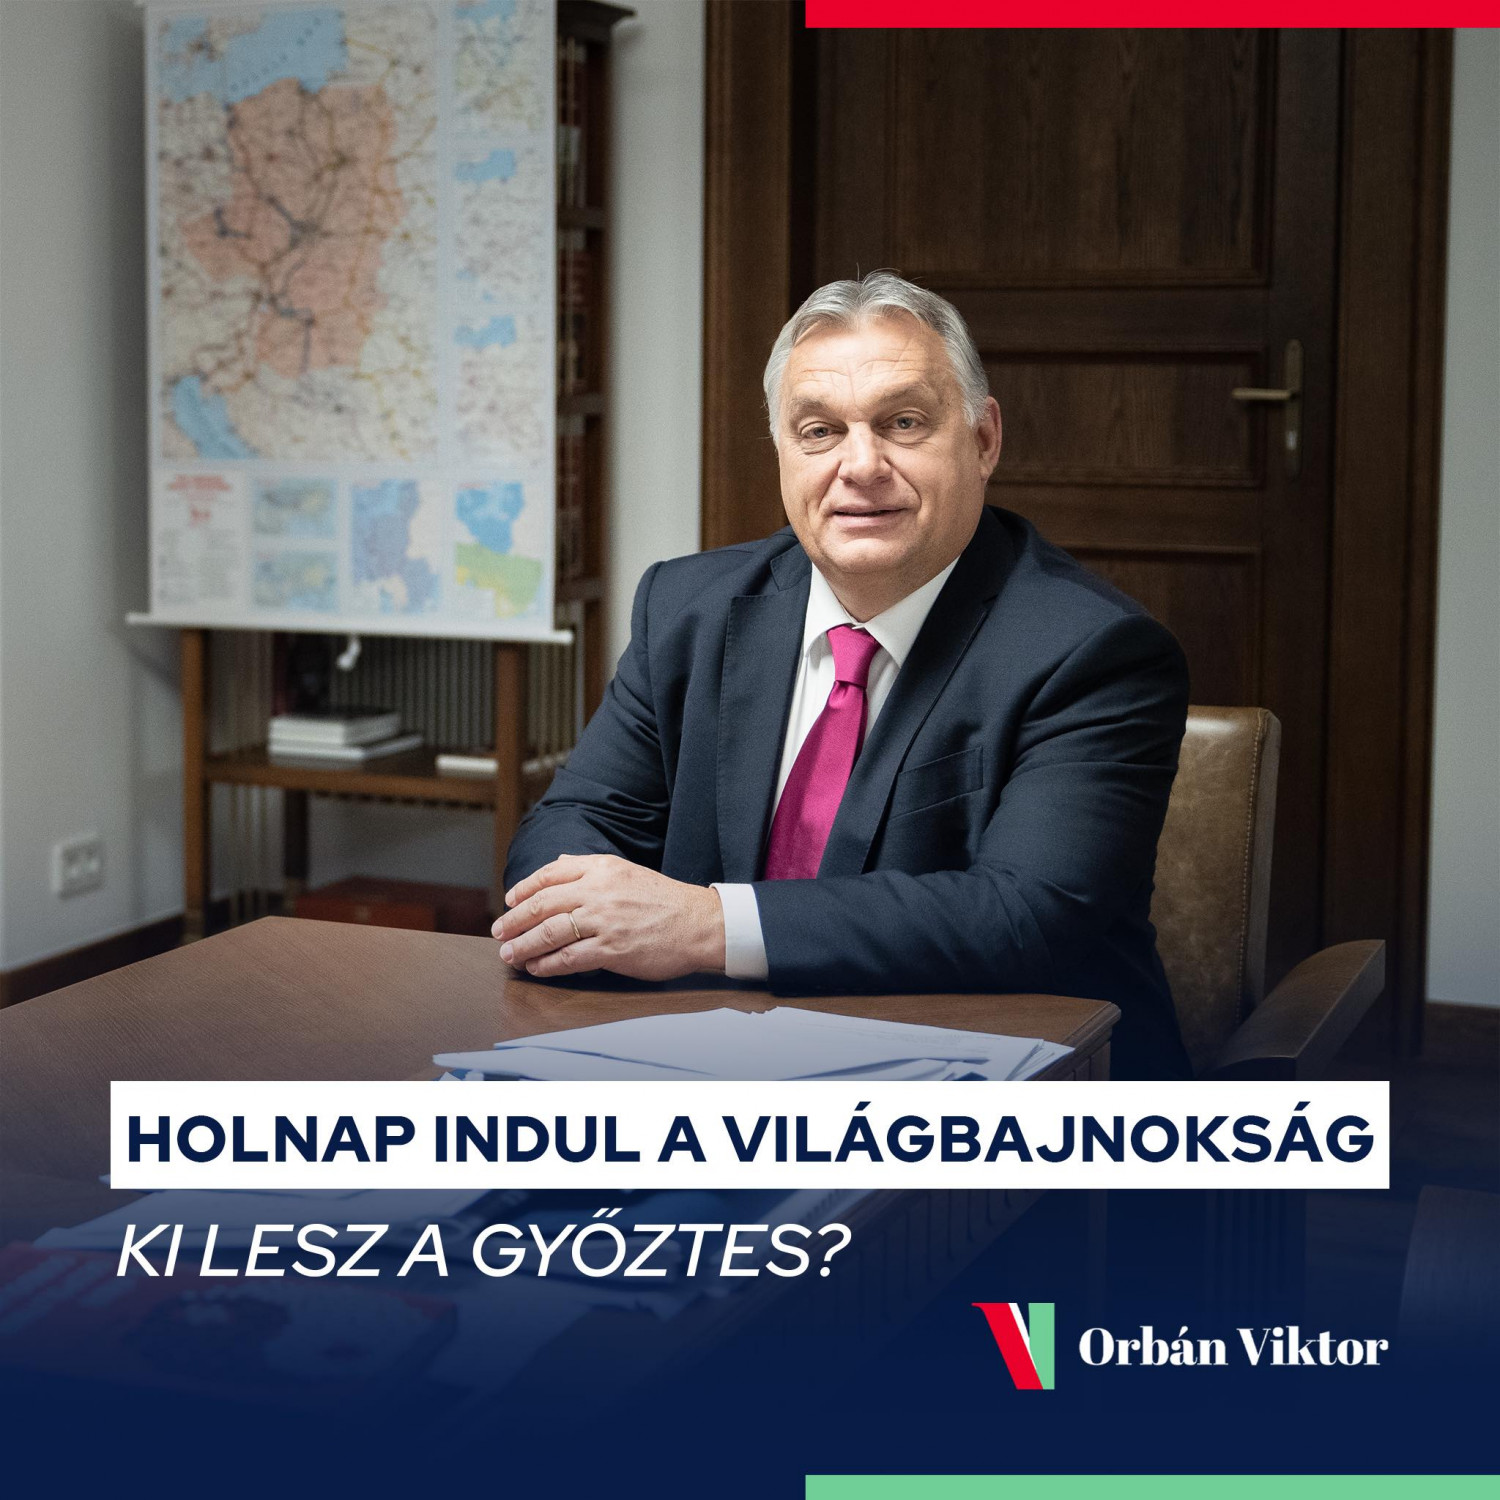 Serbia được thủ tướng Hungary đoán sẽ giành chức vô địch - Ảnh: Facebook của ông Orbán Viktor